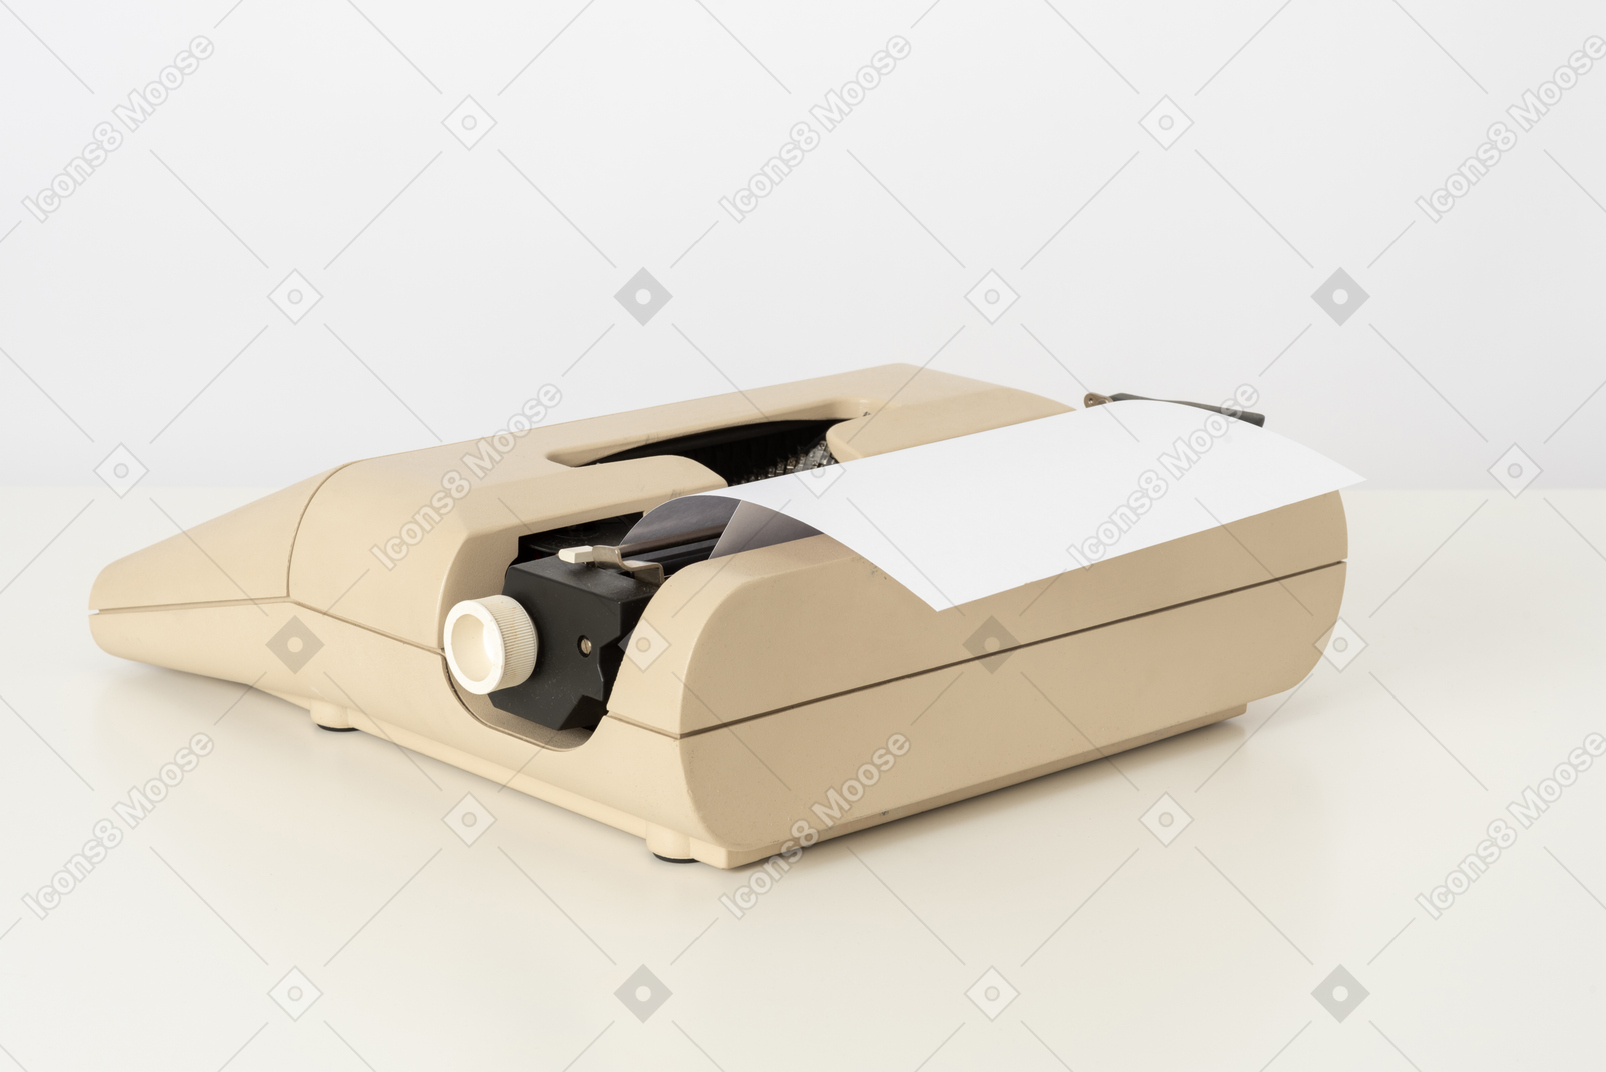 Beige typewriter on a white background